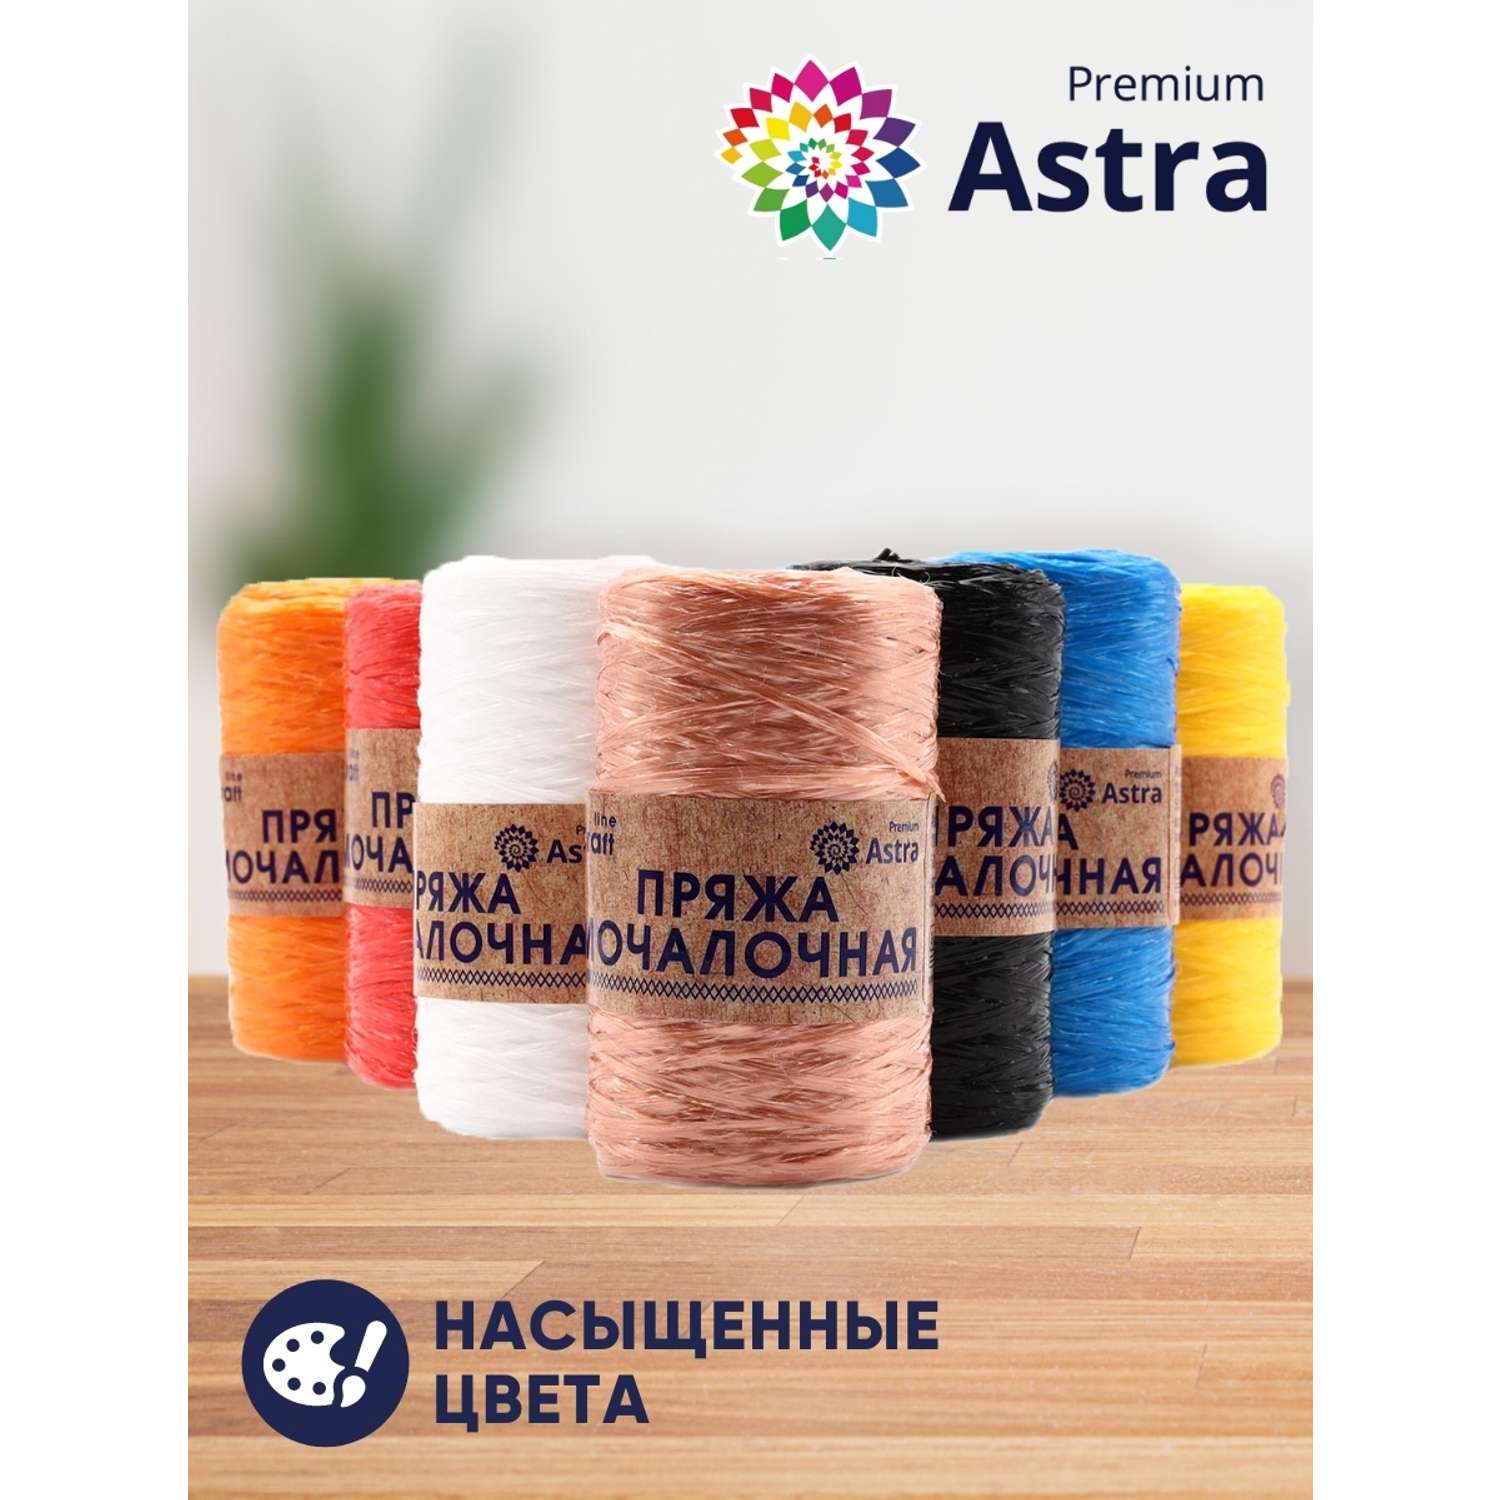 Пряжа Astra Premium для вязания мочалок пляжных сумок 200 м 10 шт разноцветные - фото 3